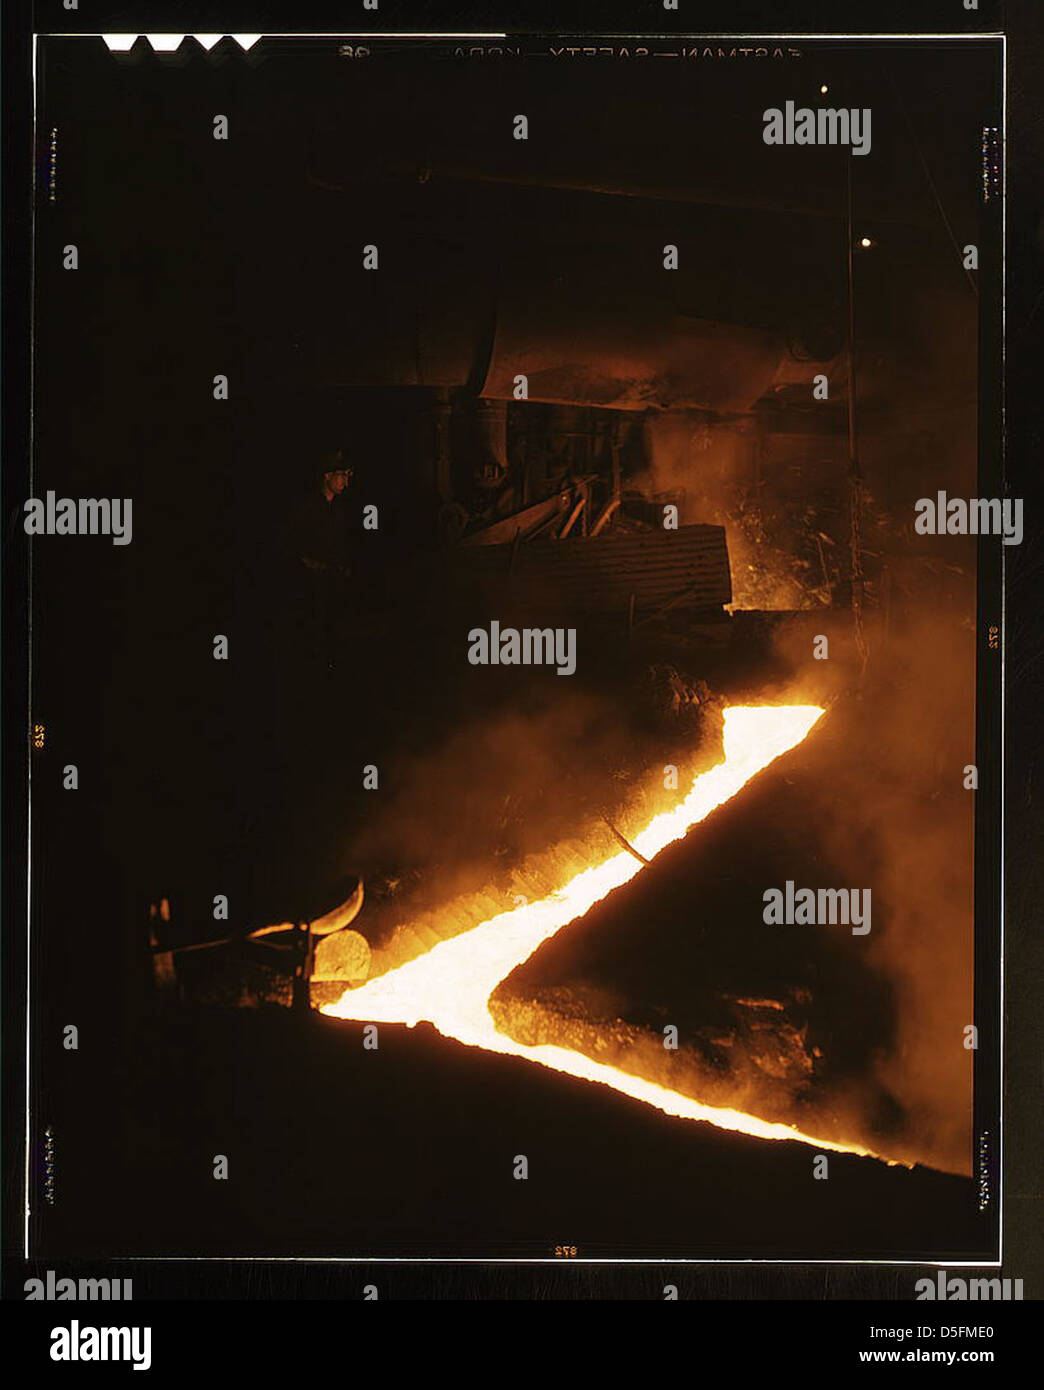 Schlackenablauf von einem der offenen Feueröfen eines Stahlwerks, Republic Steel Corp., Youngstown, Ohio. Schlacke wird aus dem Ofen gezogen, kurz bevor der geschmolzene Stahl in Schöpfkellen zum Ingoten (LOC) gegossen wird Stockfoto